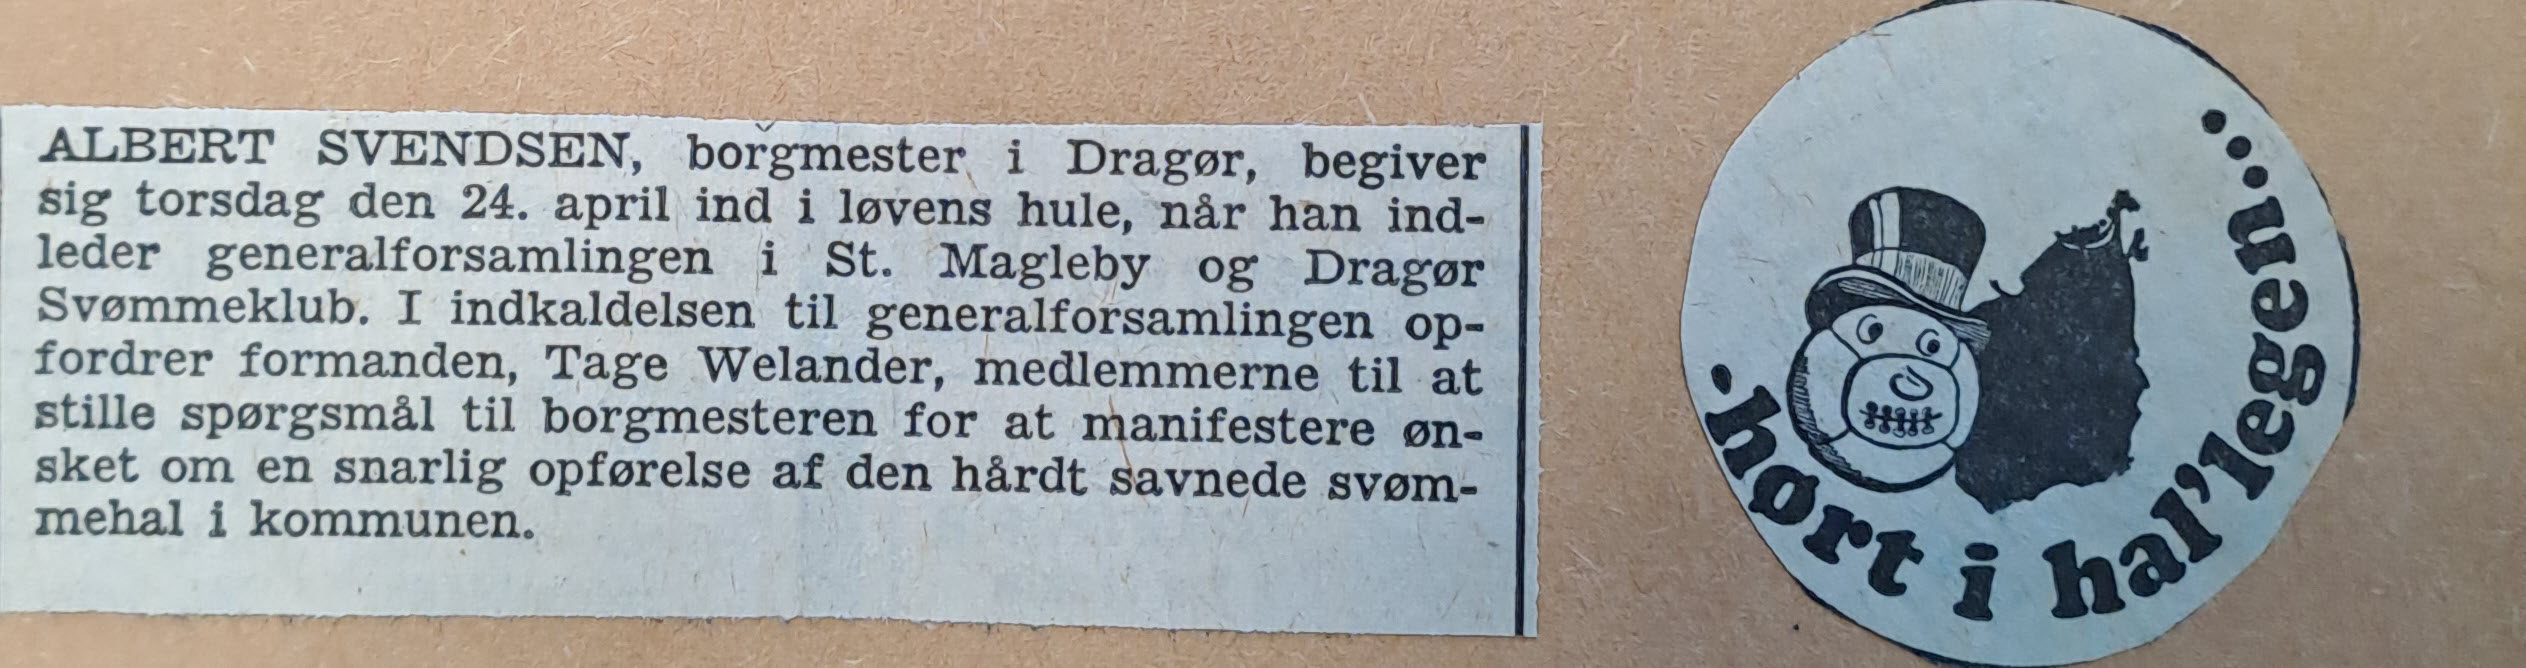 Amager Bladet 14.11.1975 (Dragør Lokalarkiv)